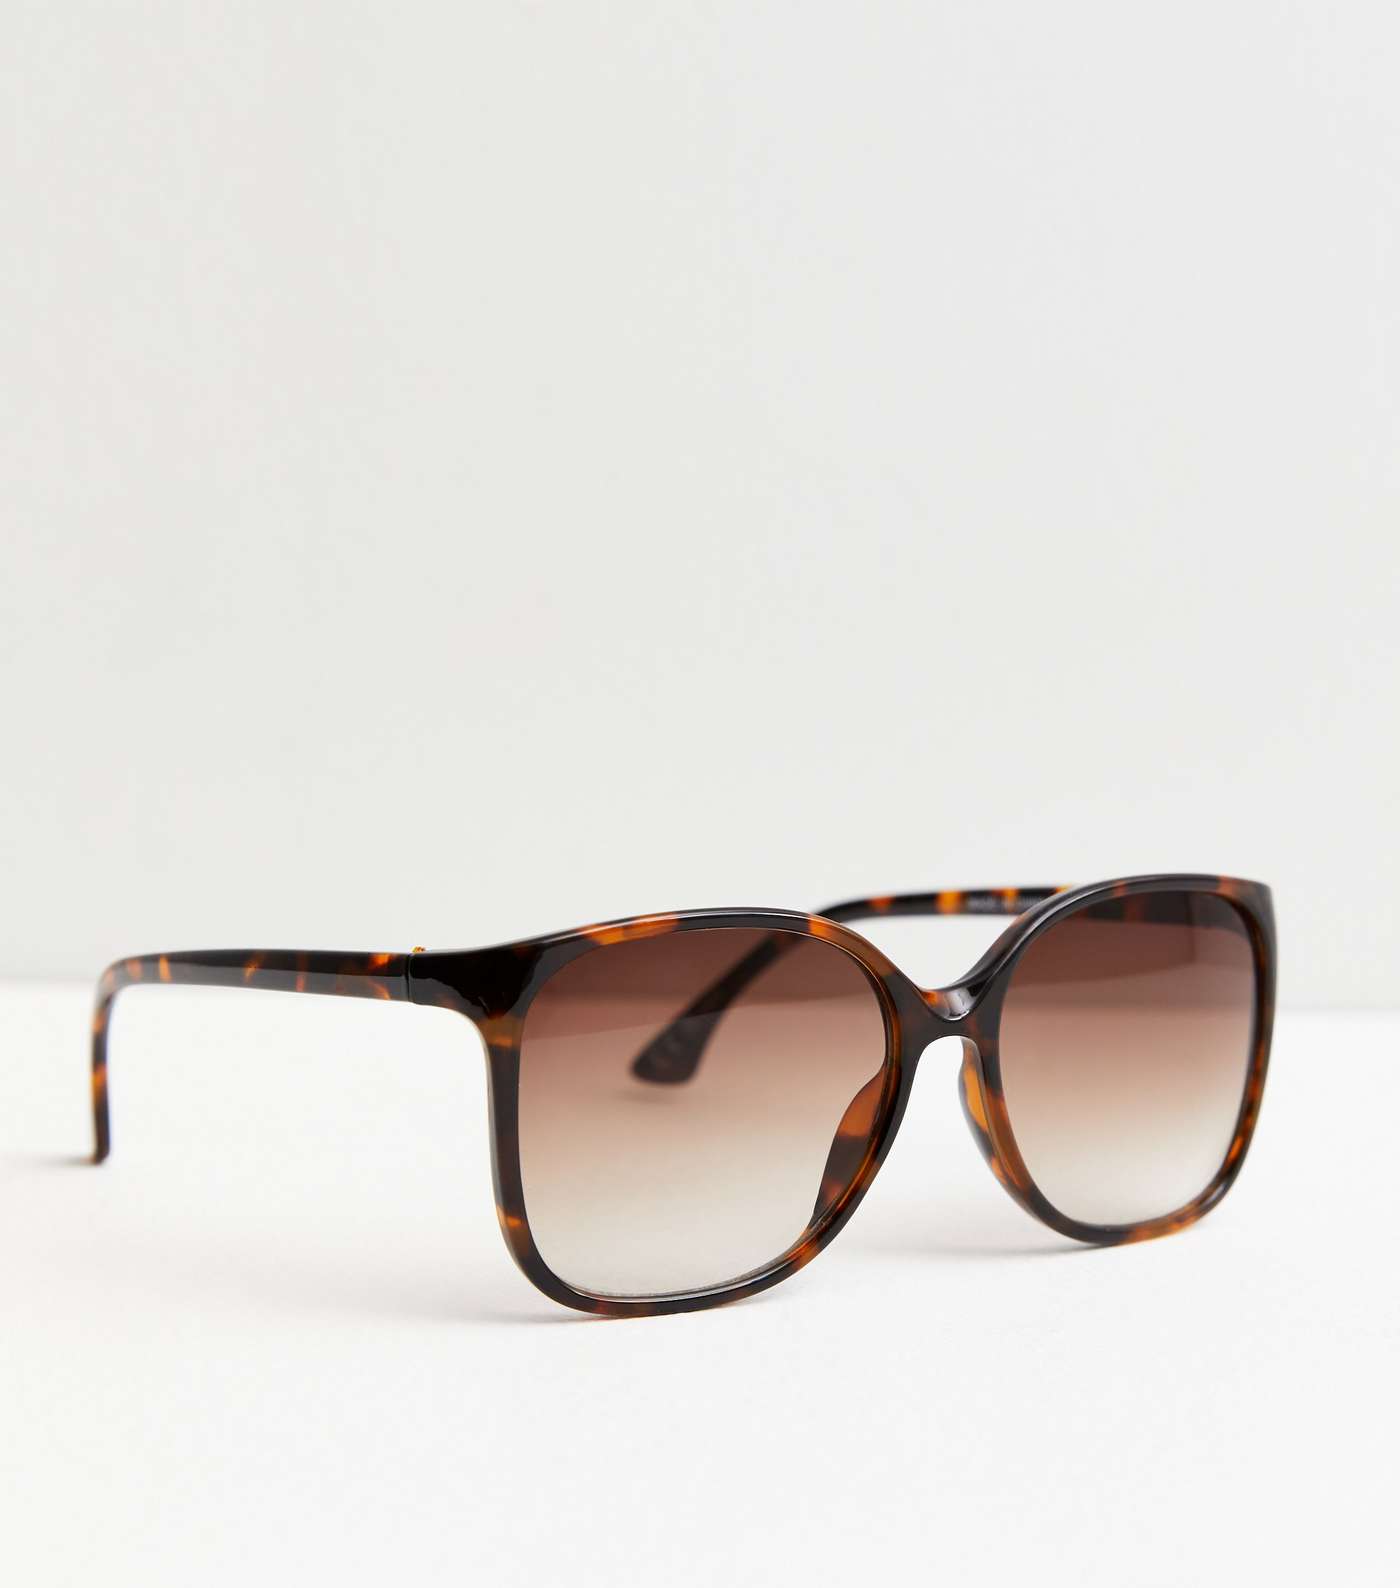 Girls Dark Brown Tortoiseshell Effect Square Sunglasses Image 2